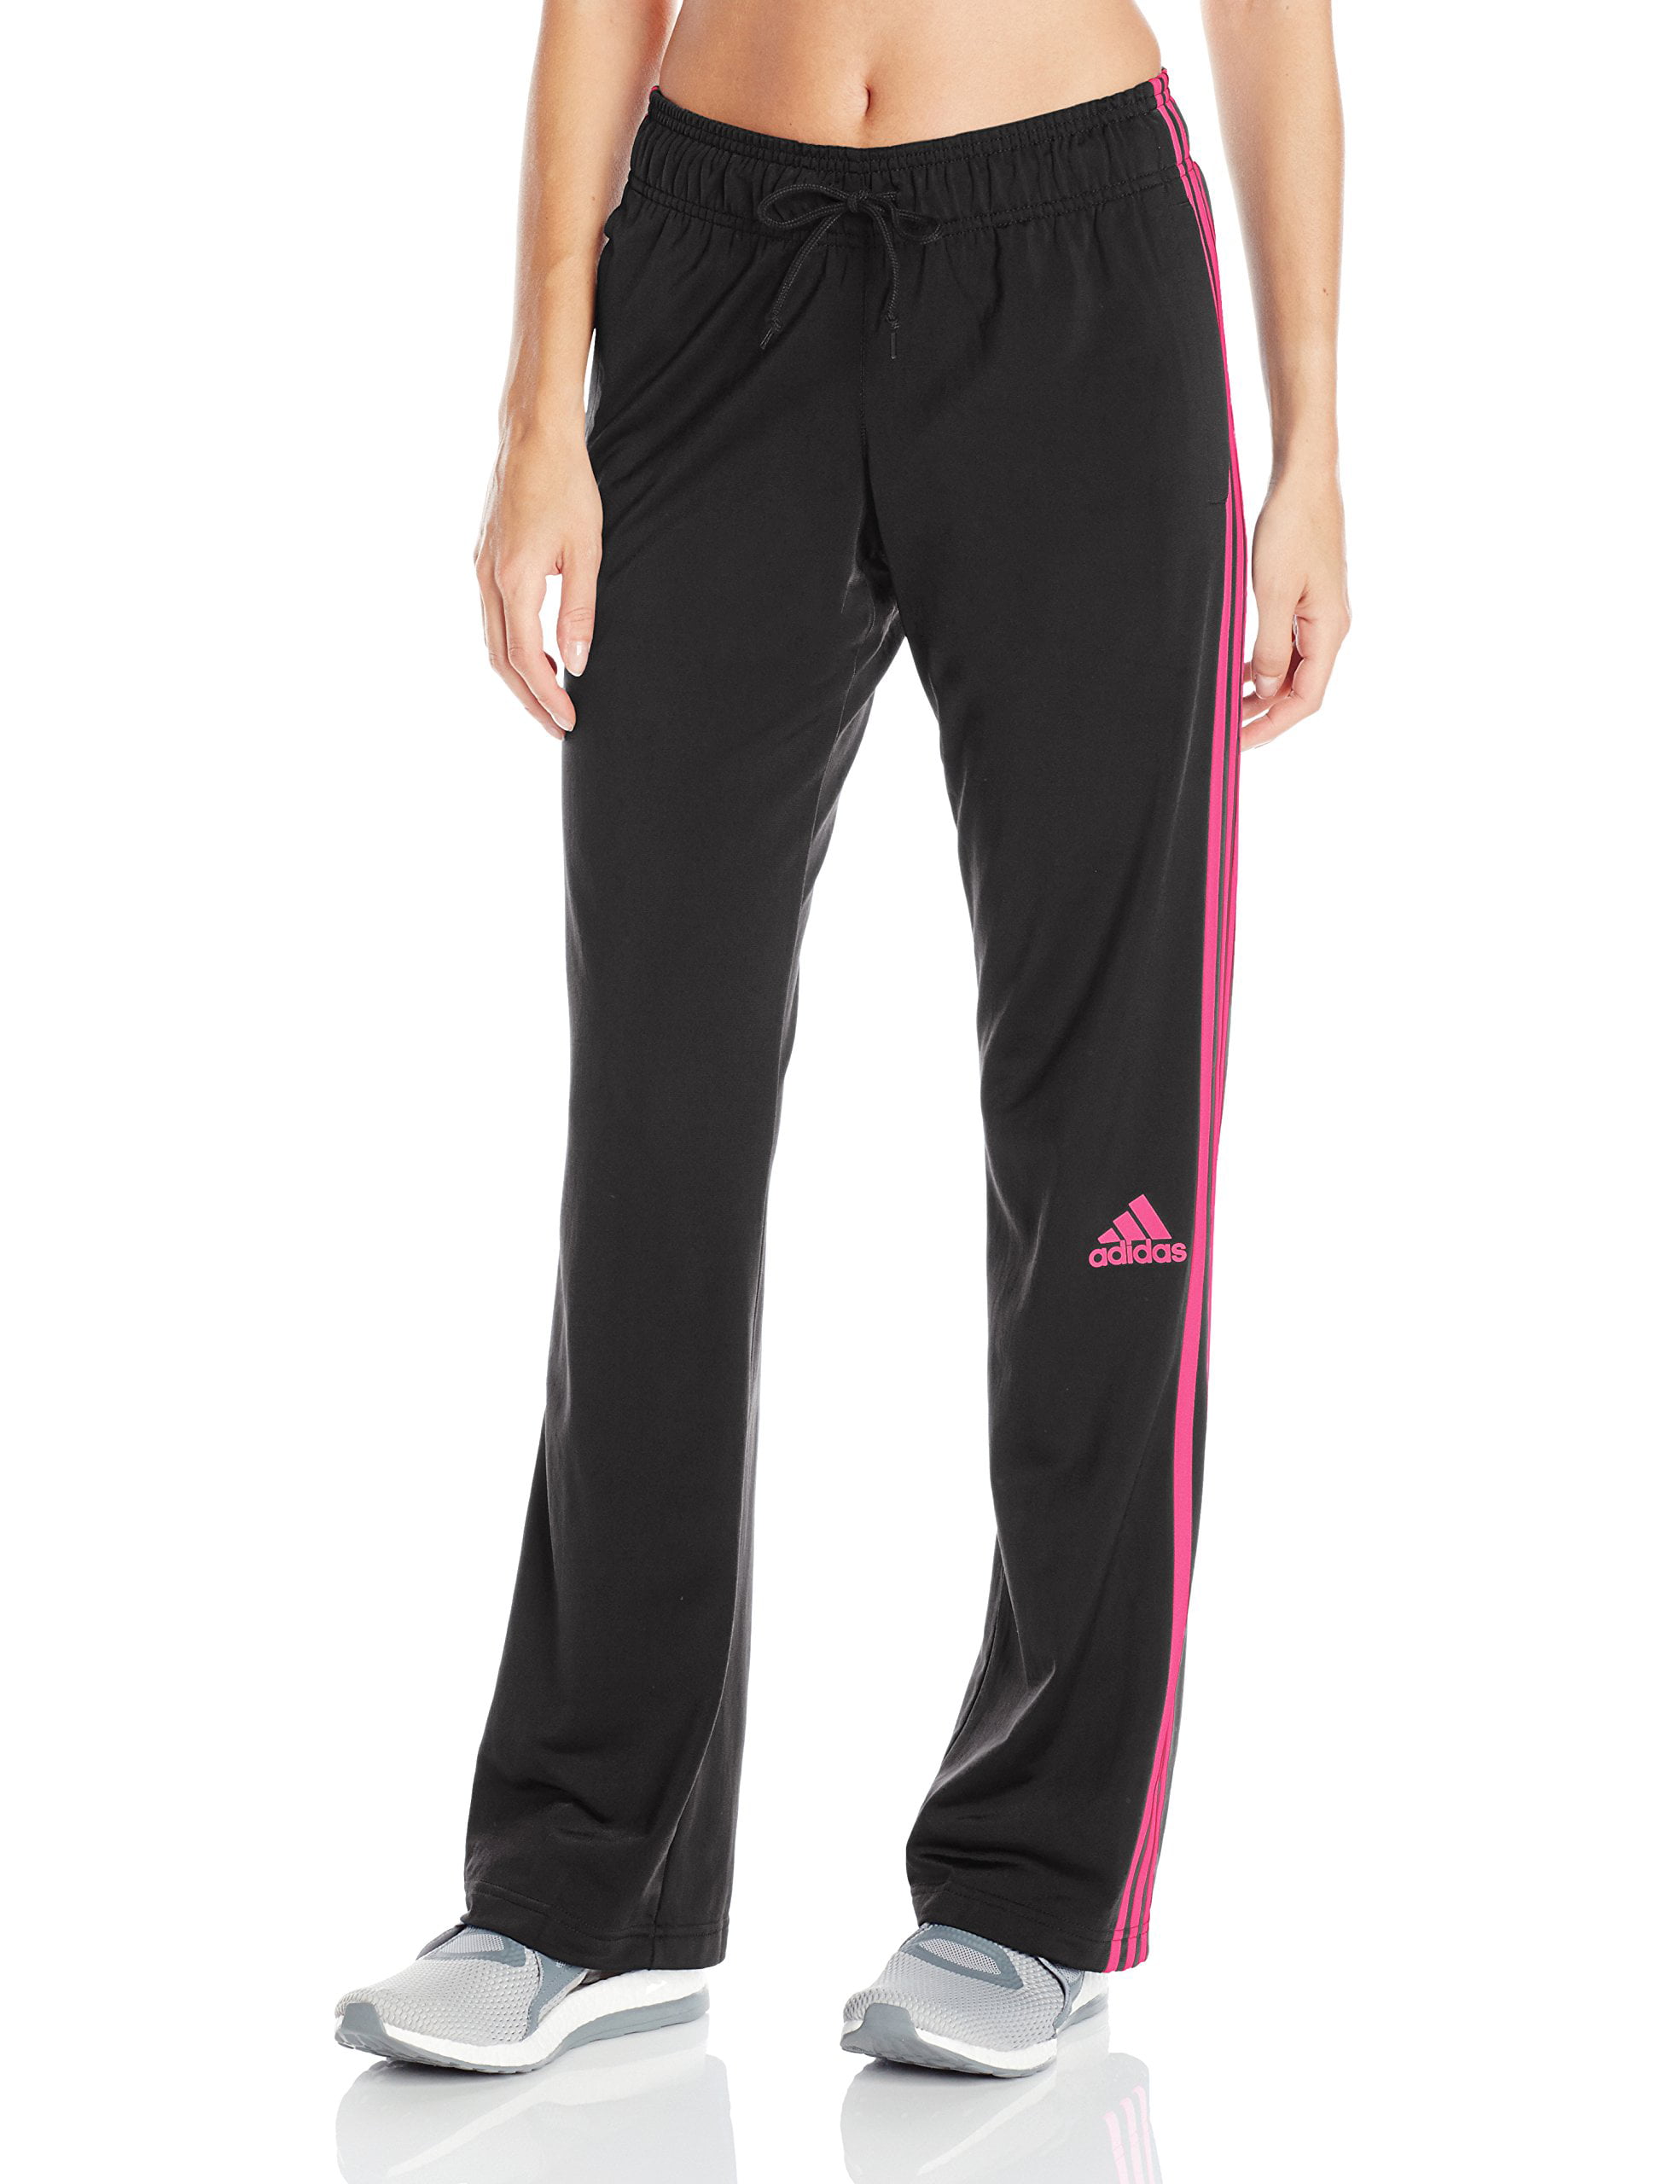 Adidas Women's 3 Stripe Pants, Black/Shock Pink 